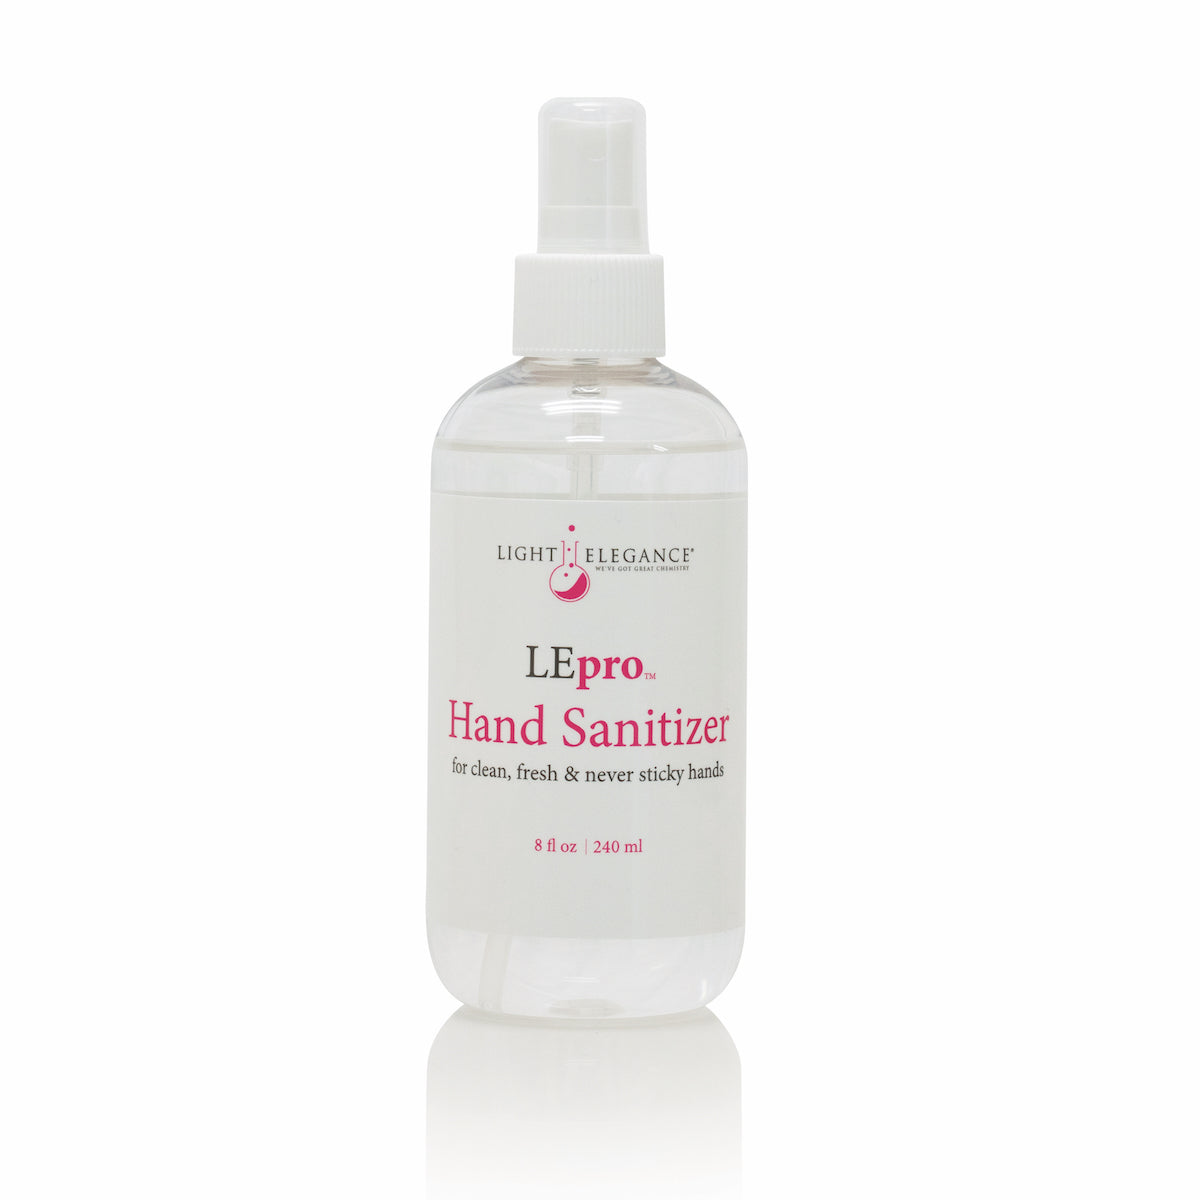 LEpro Hand Sanitizer